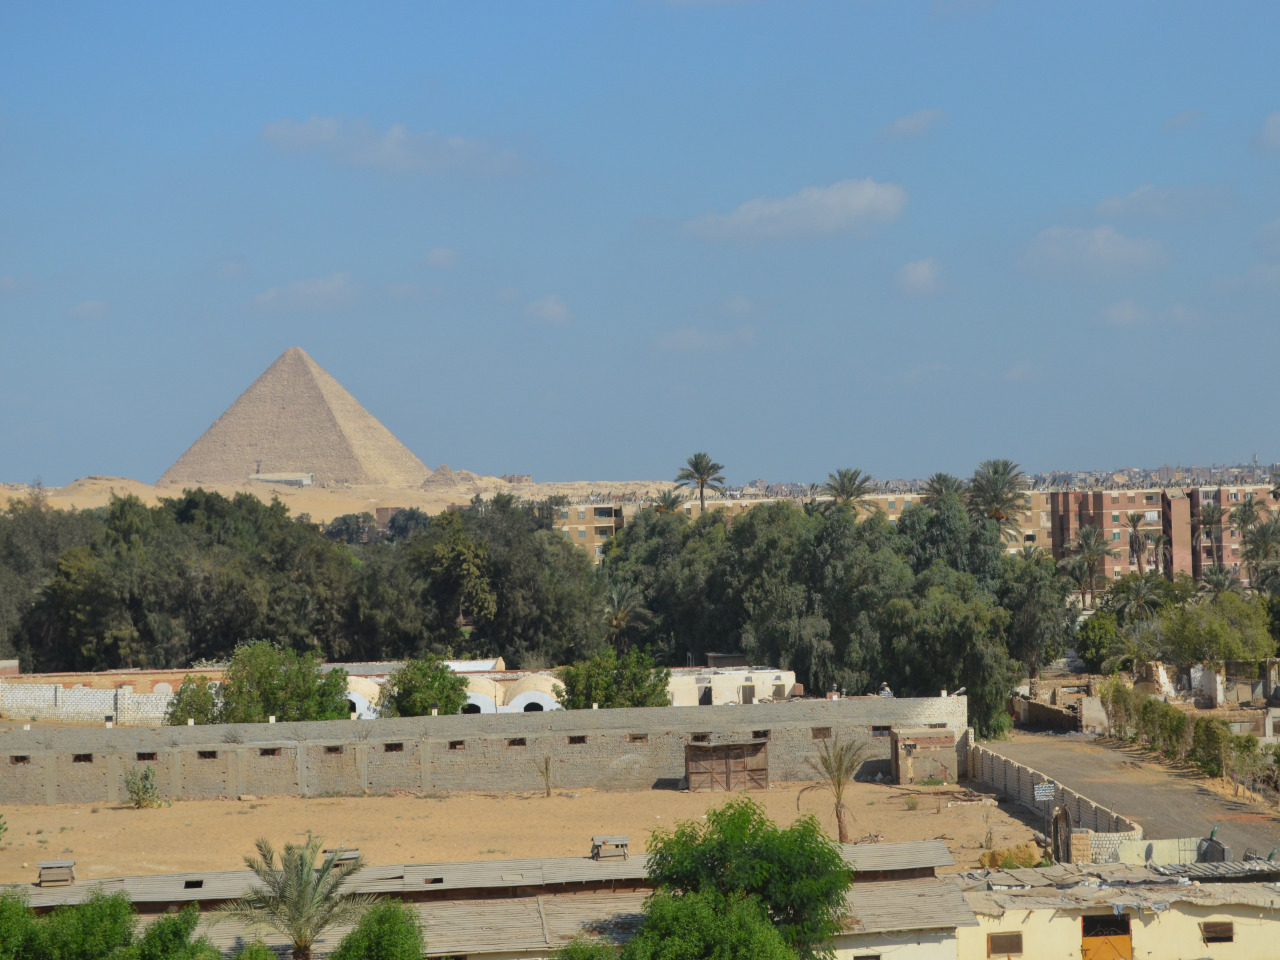 10 древних пирамид Египта за 1 день! | Цена 230€, отзывы, описание экскурсии